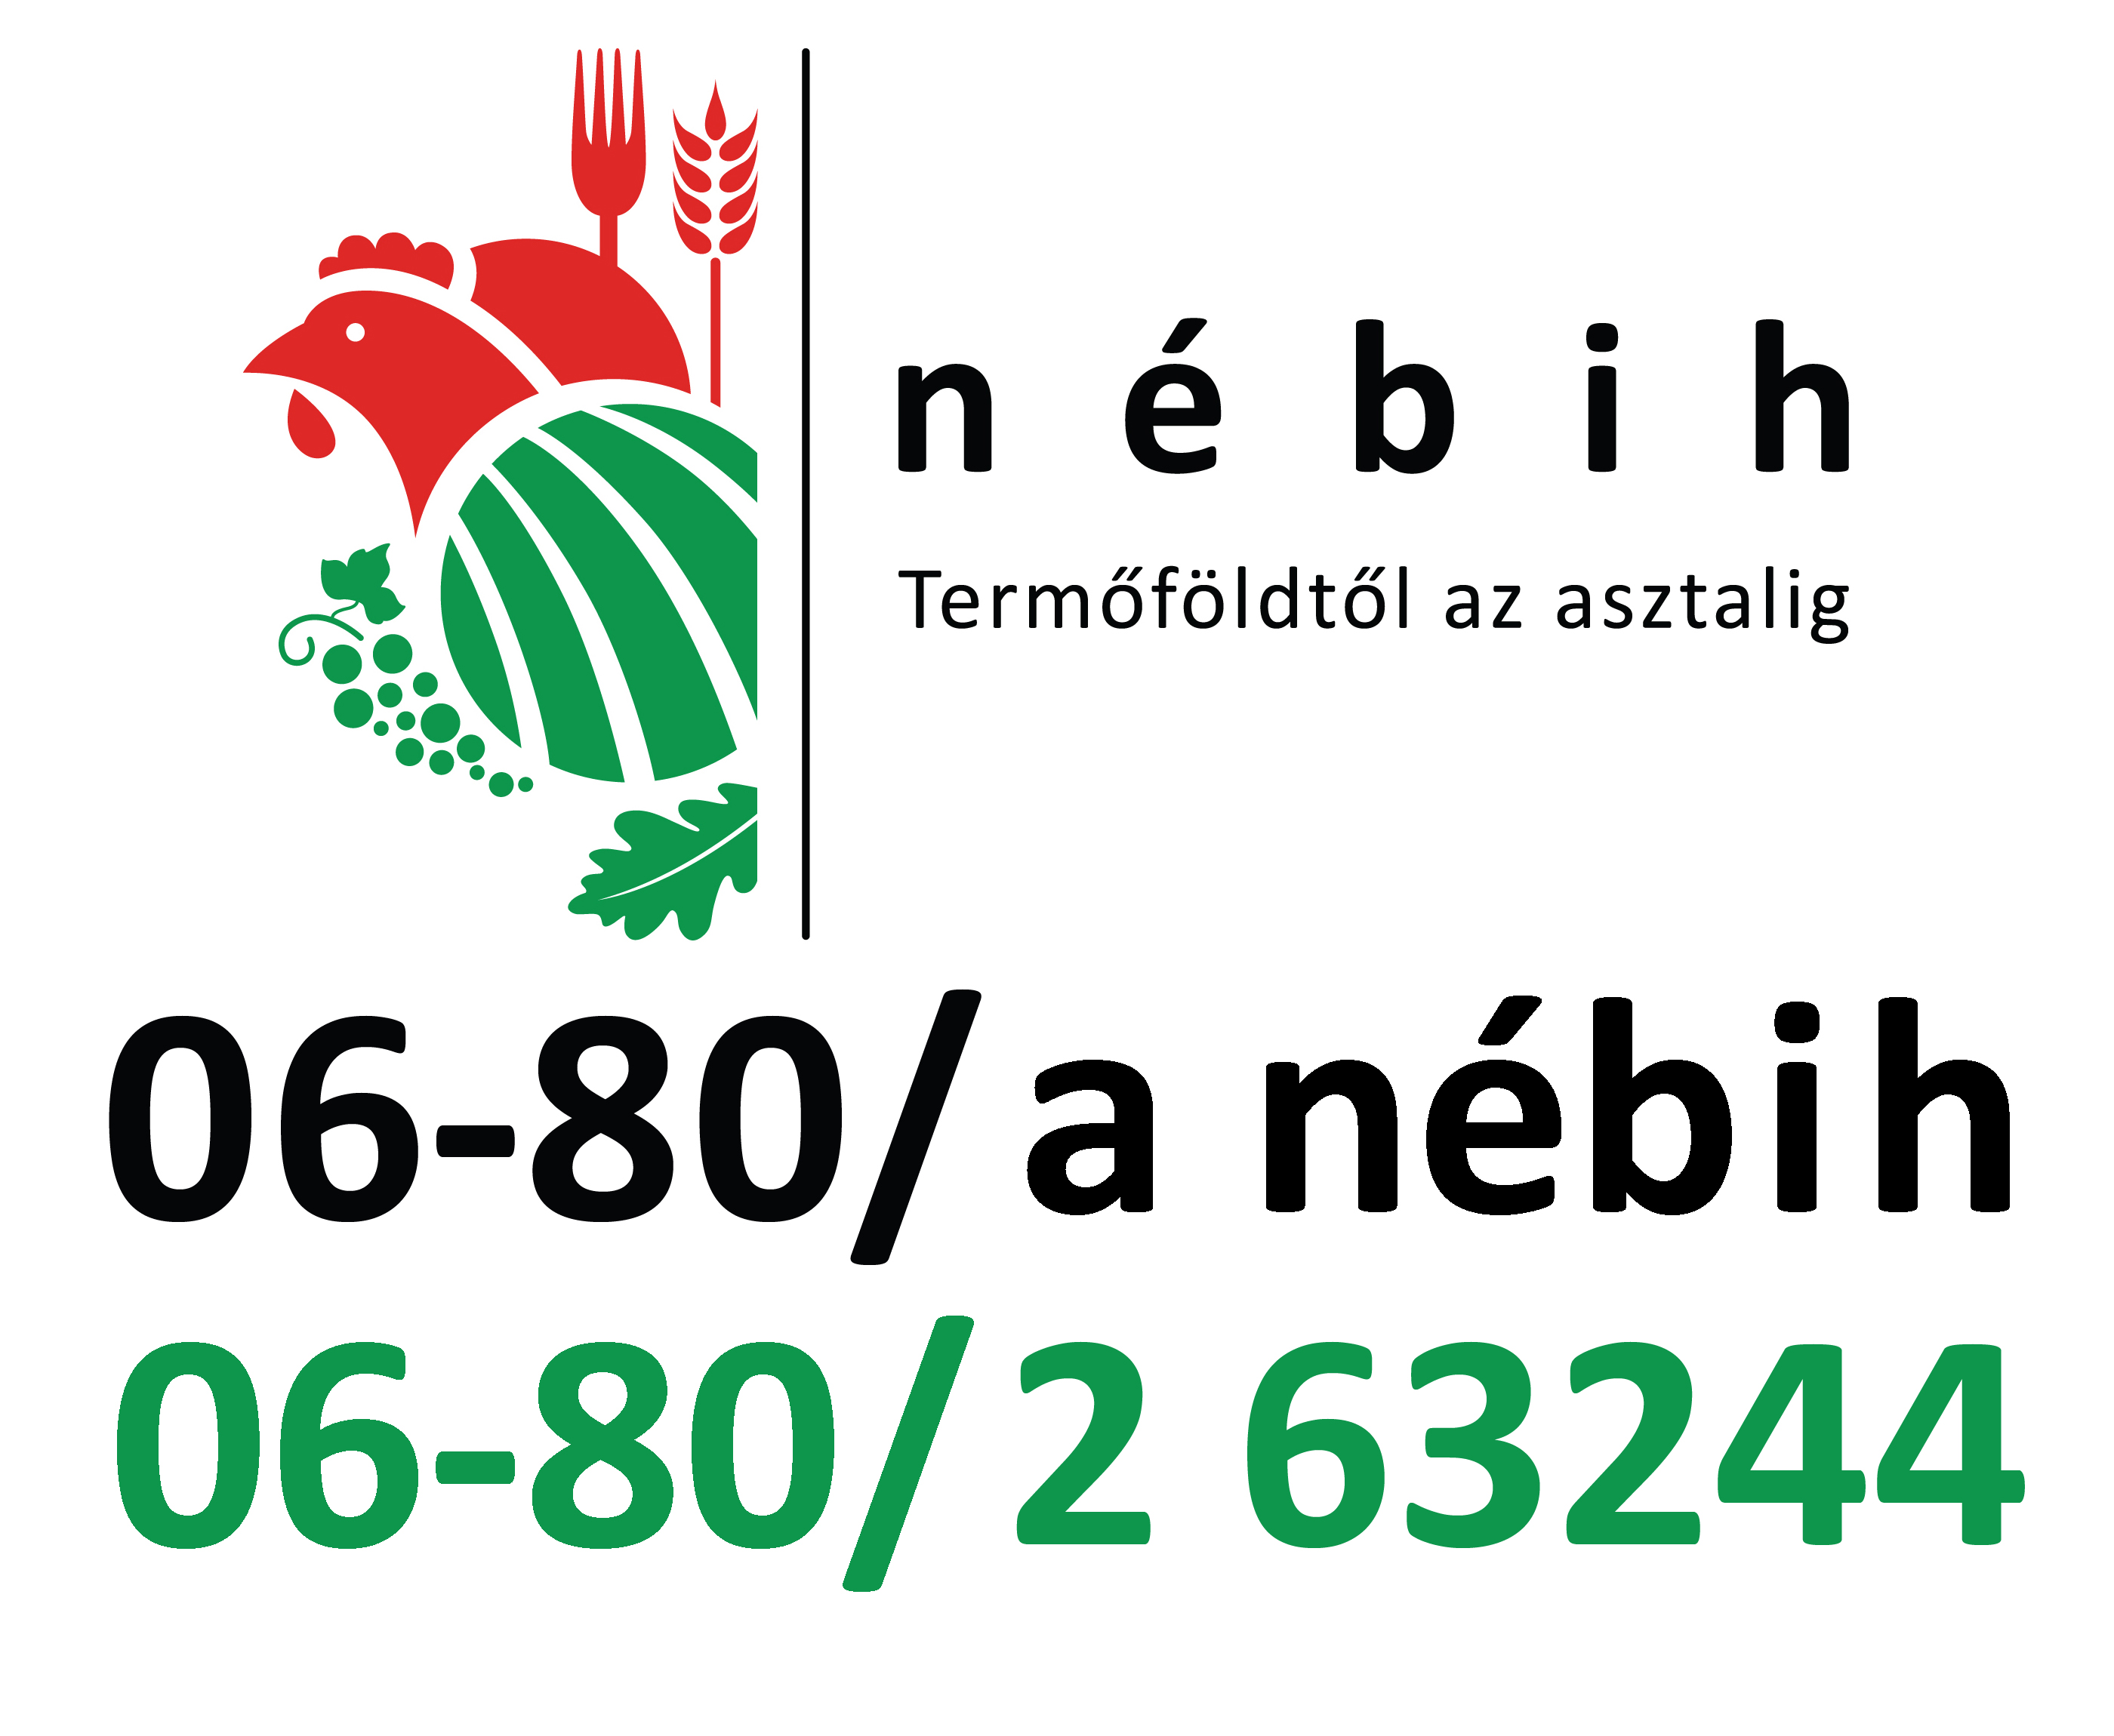 Két budapesti zöldségtisztító üzem működését függesztette fel a Nébih